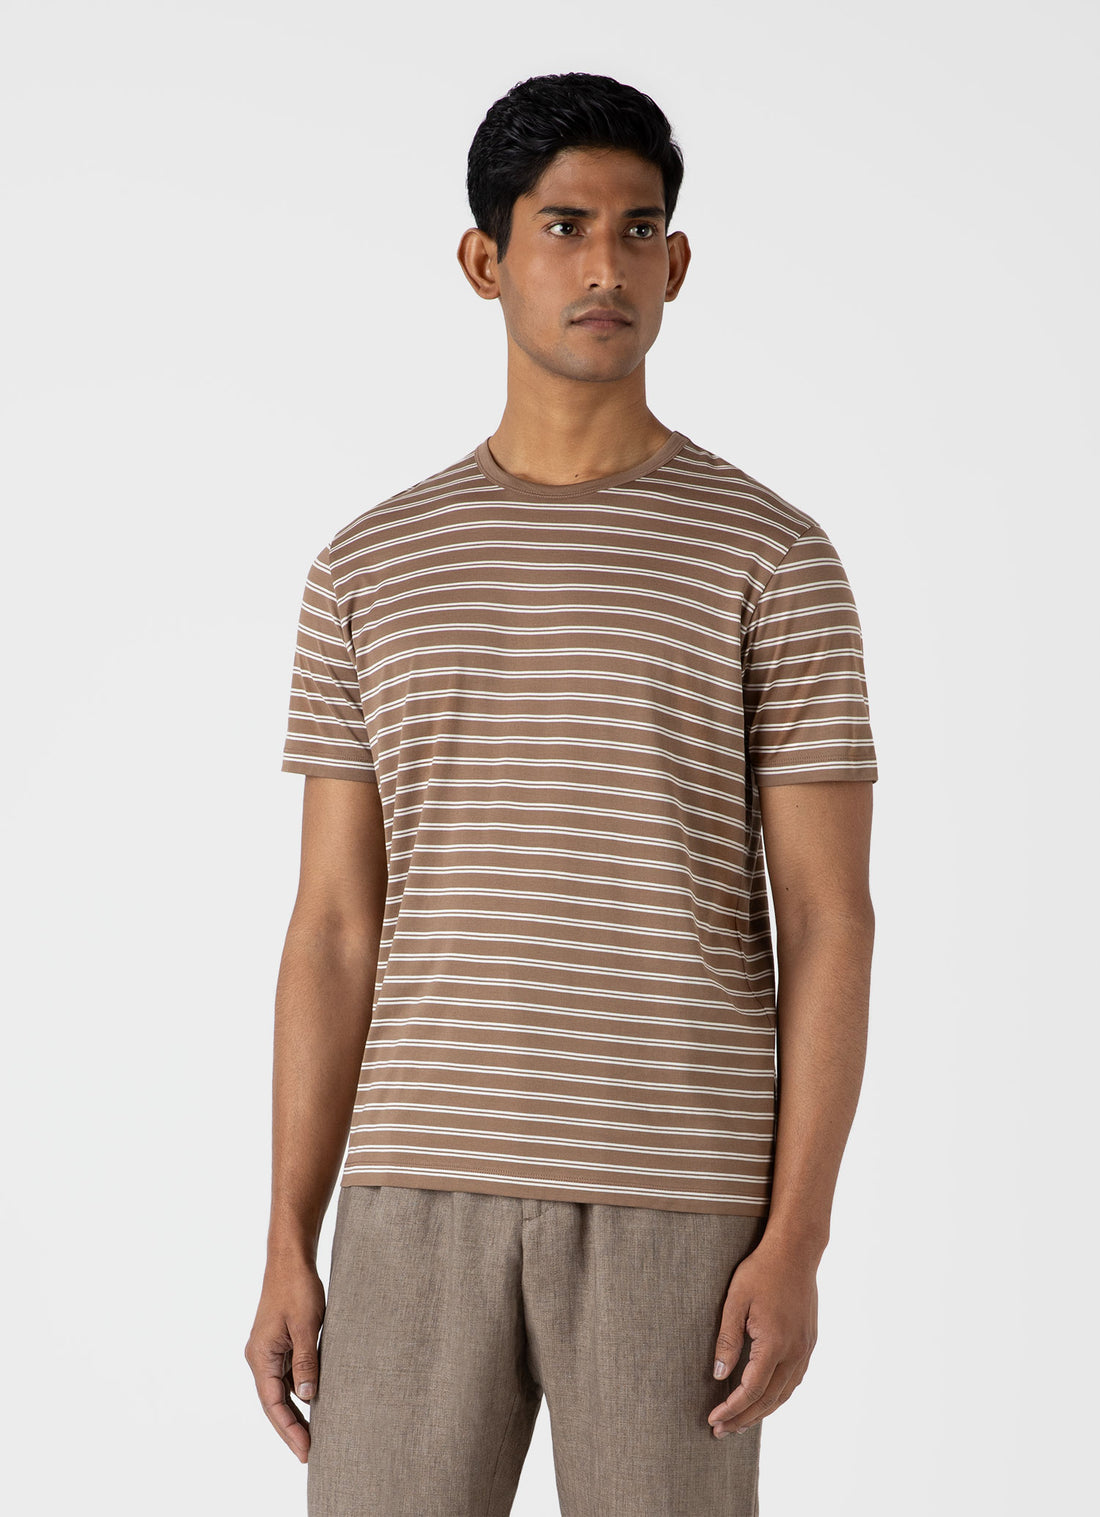 Men's Classic T-shirt in Dark Sand/Ecru Tramline Stripe